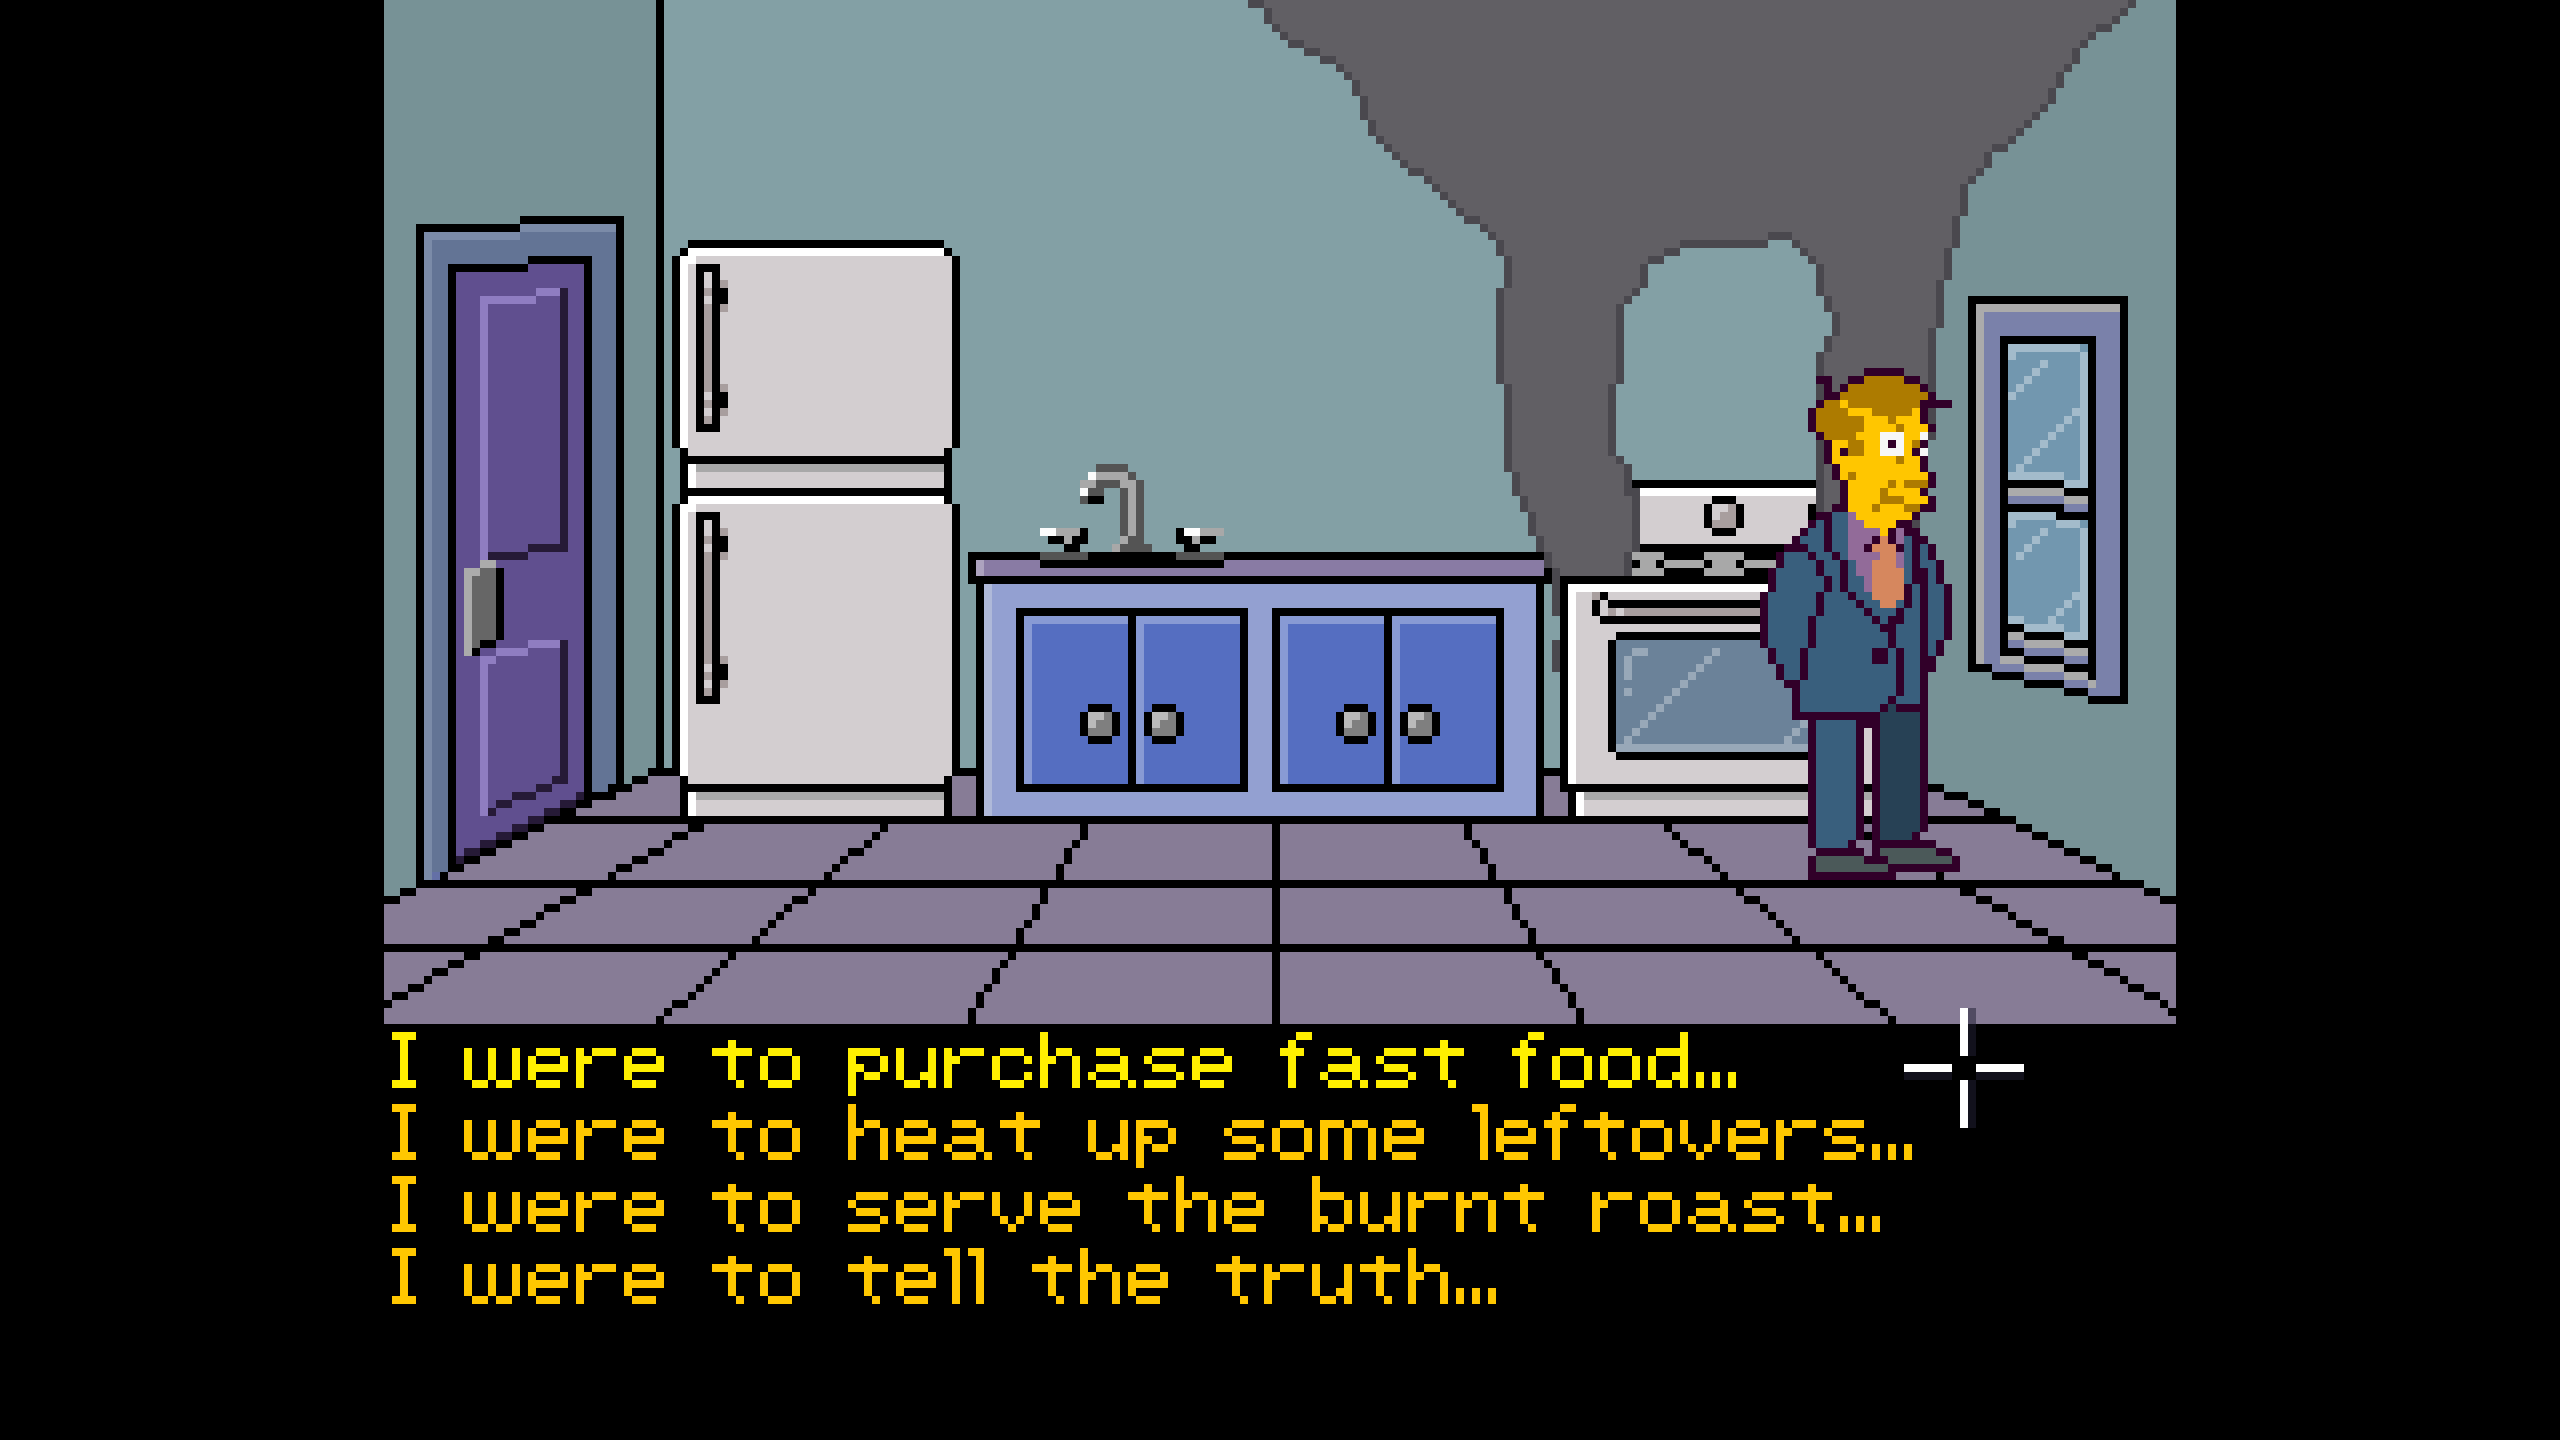 Prepara tus propios jamones al estilo LucasArts en este juego de aventuras de Los Simpson hecho por fanáticos.